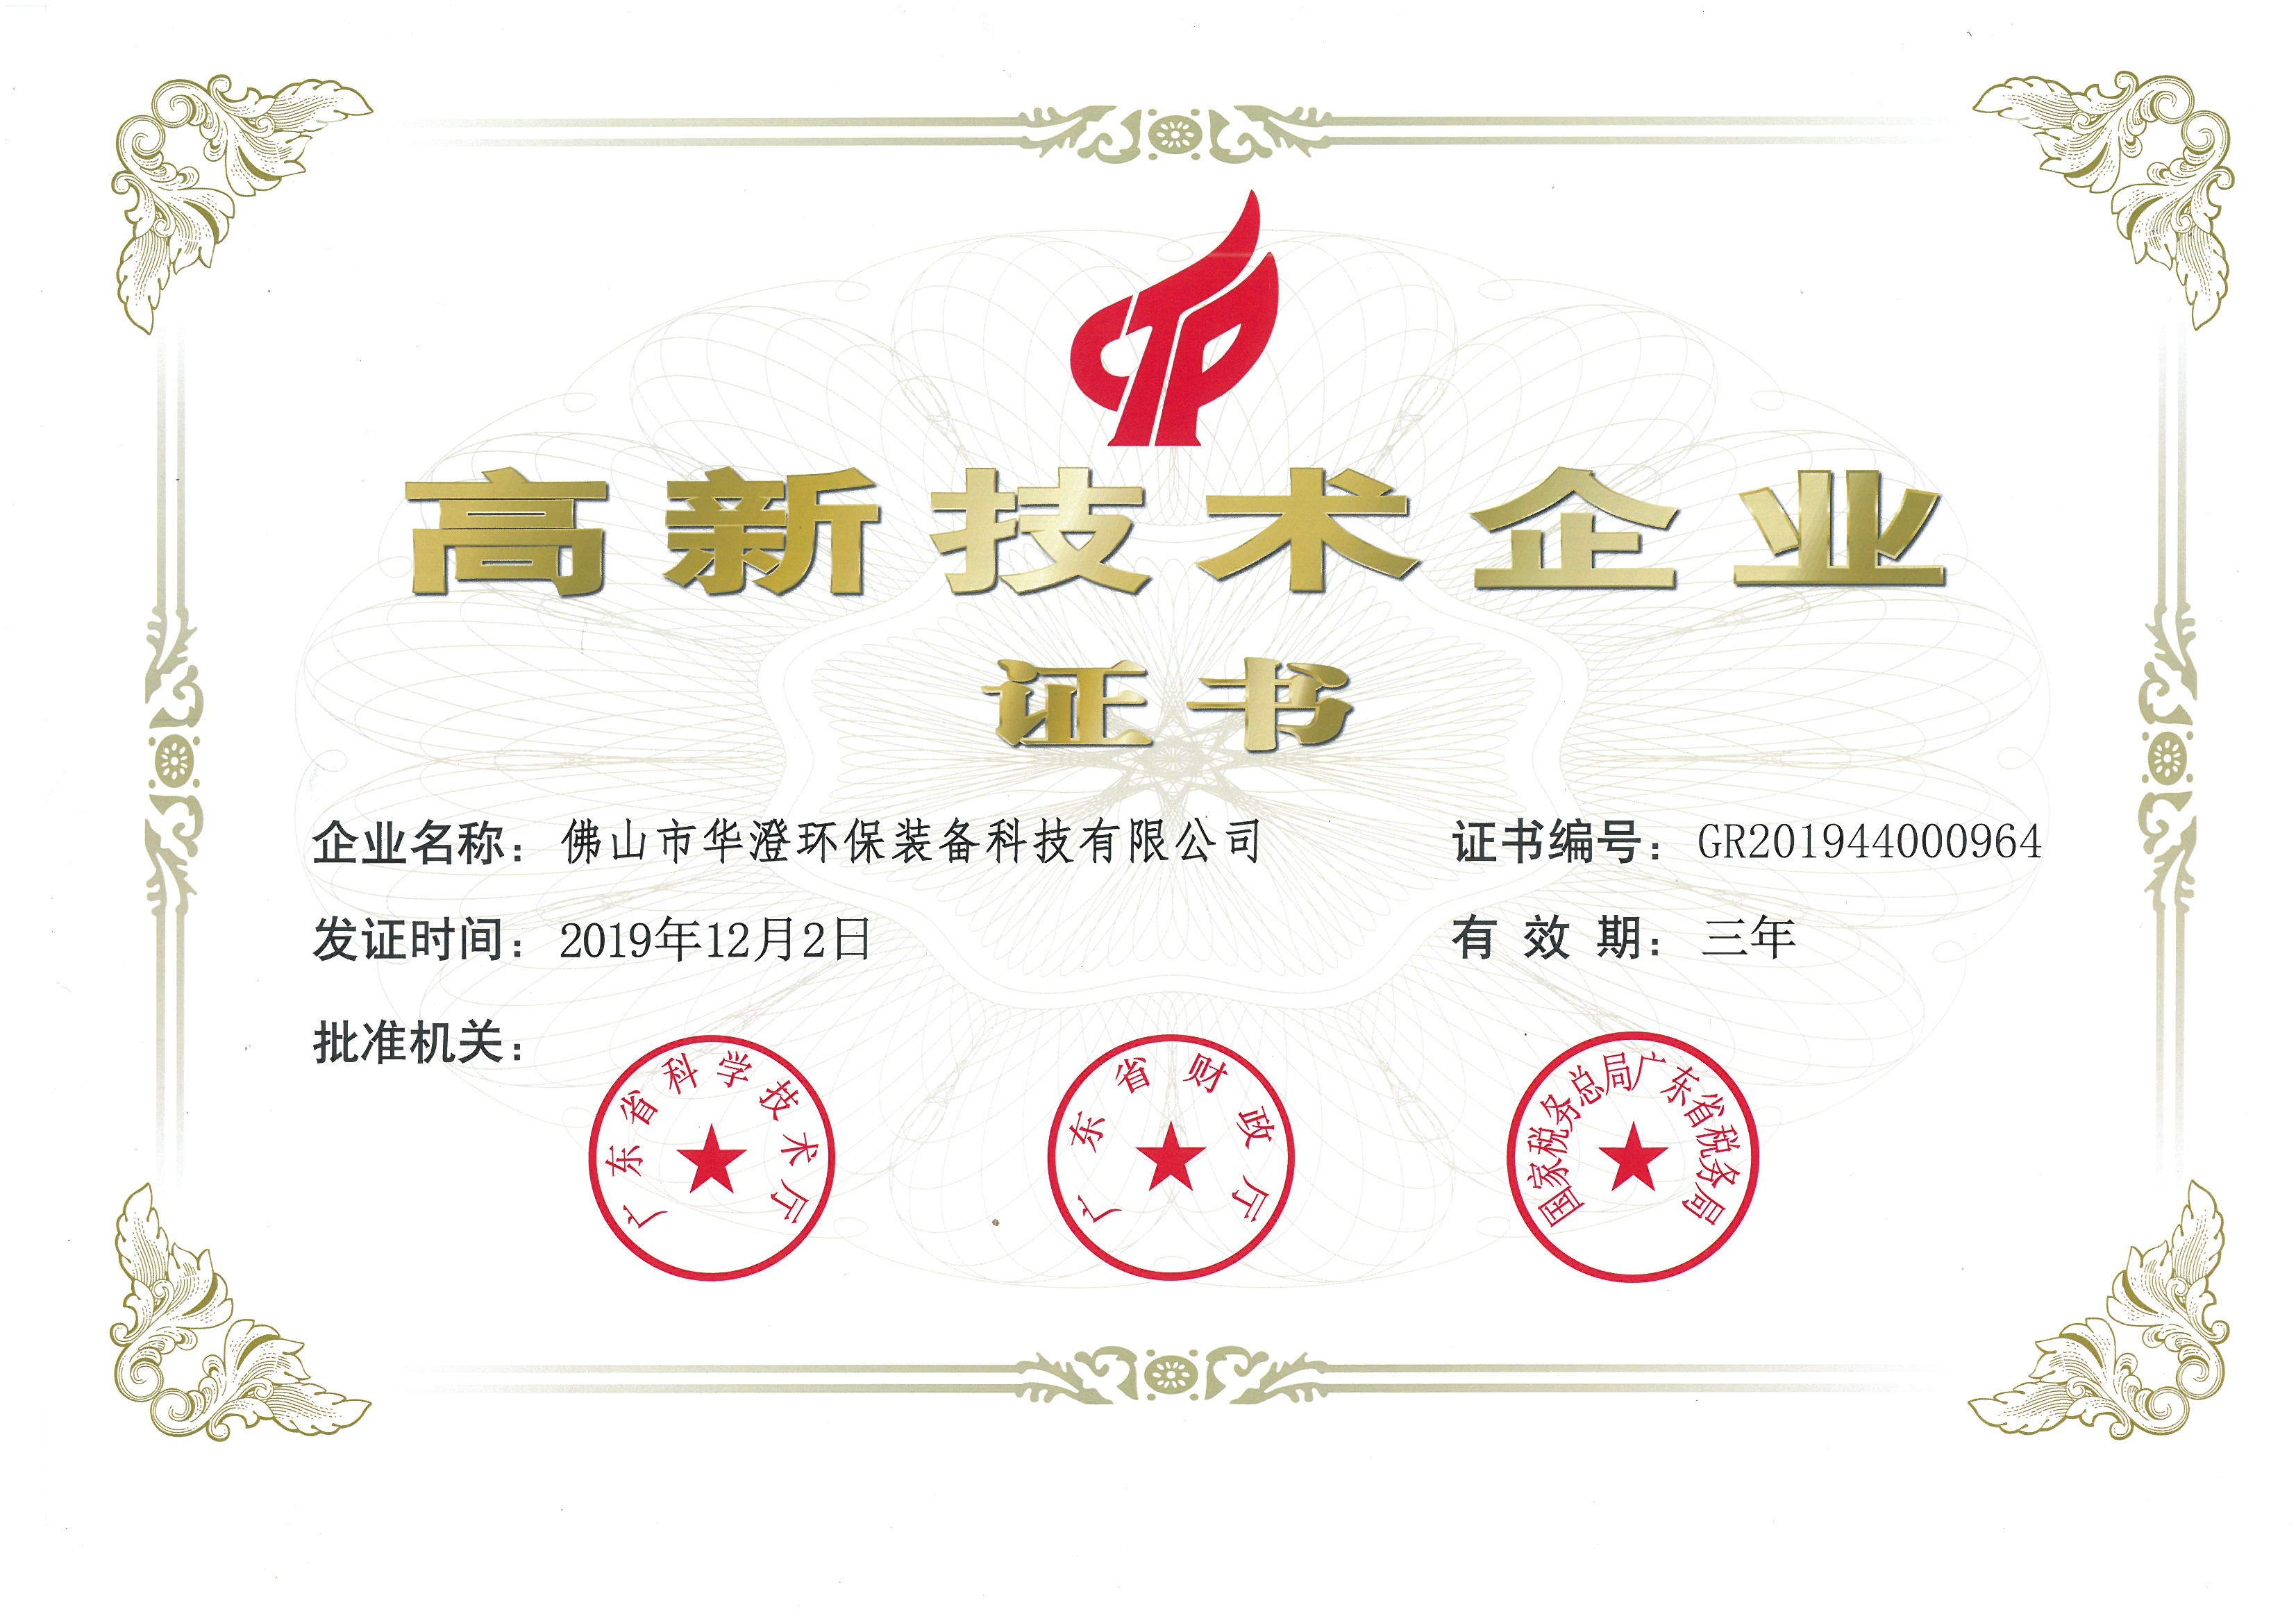 华澄-高新技术企业证书